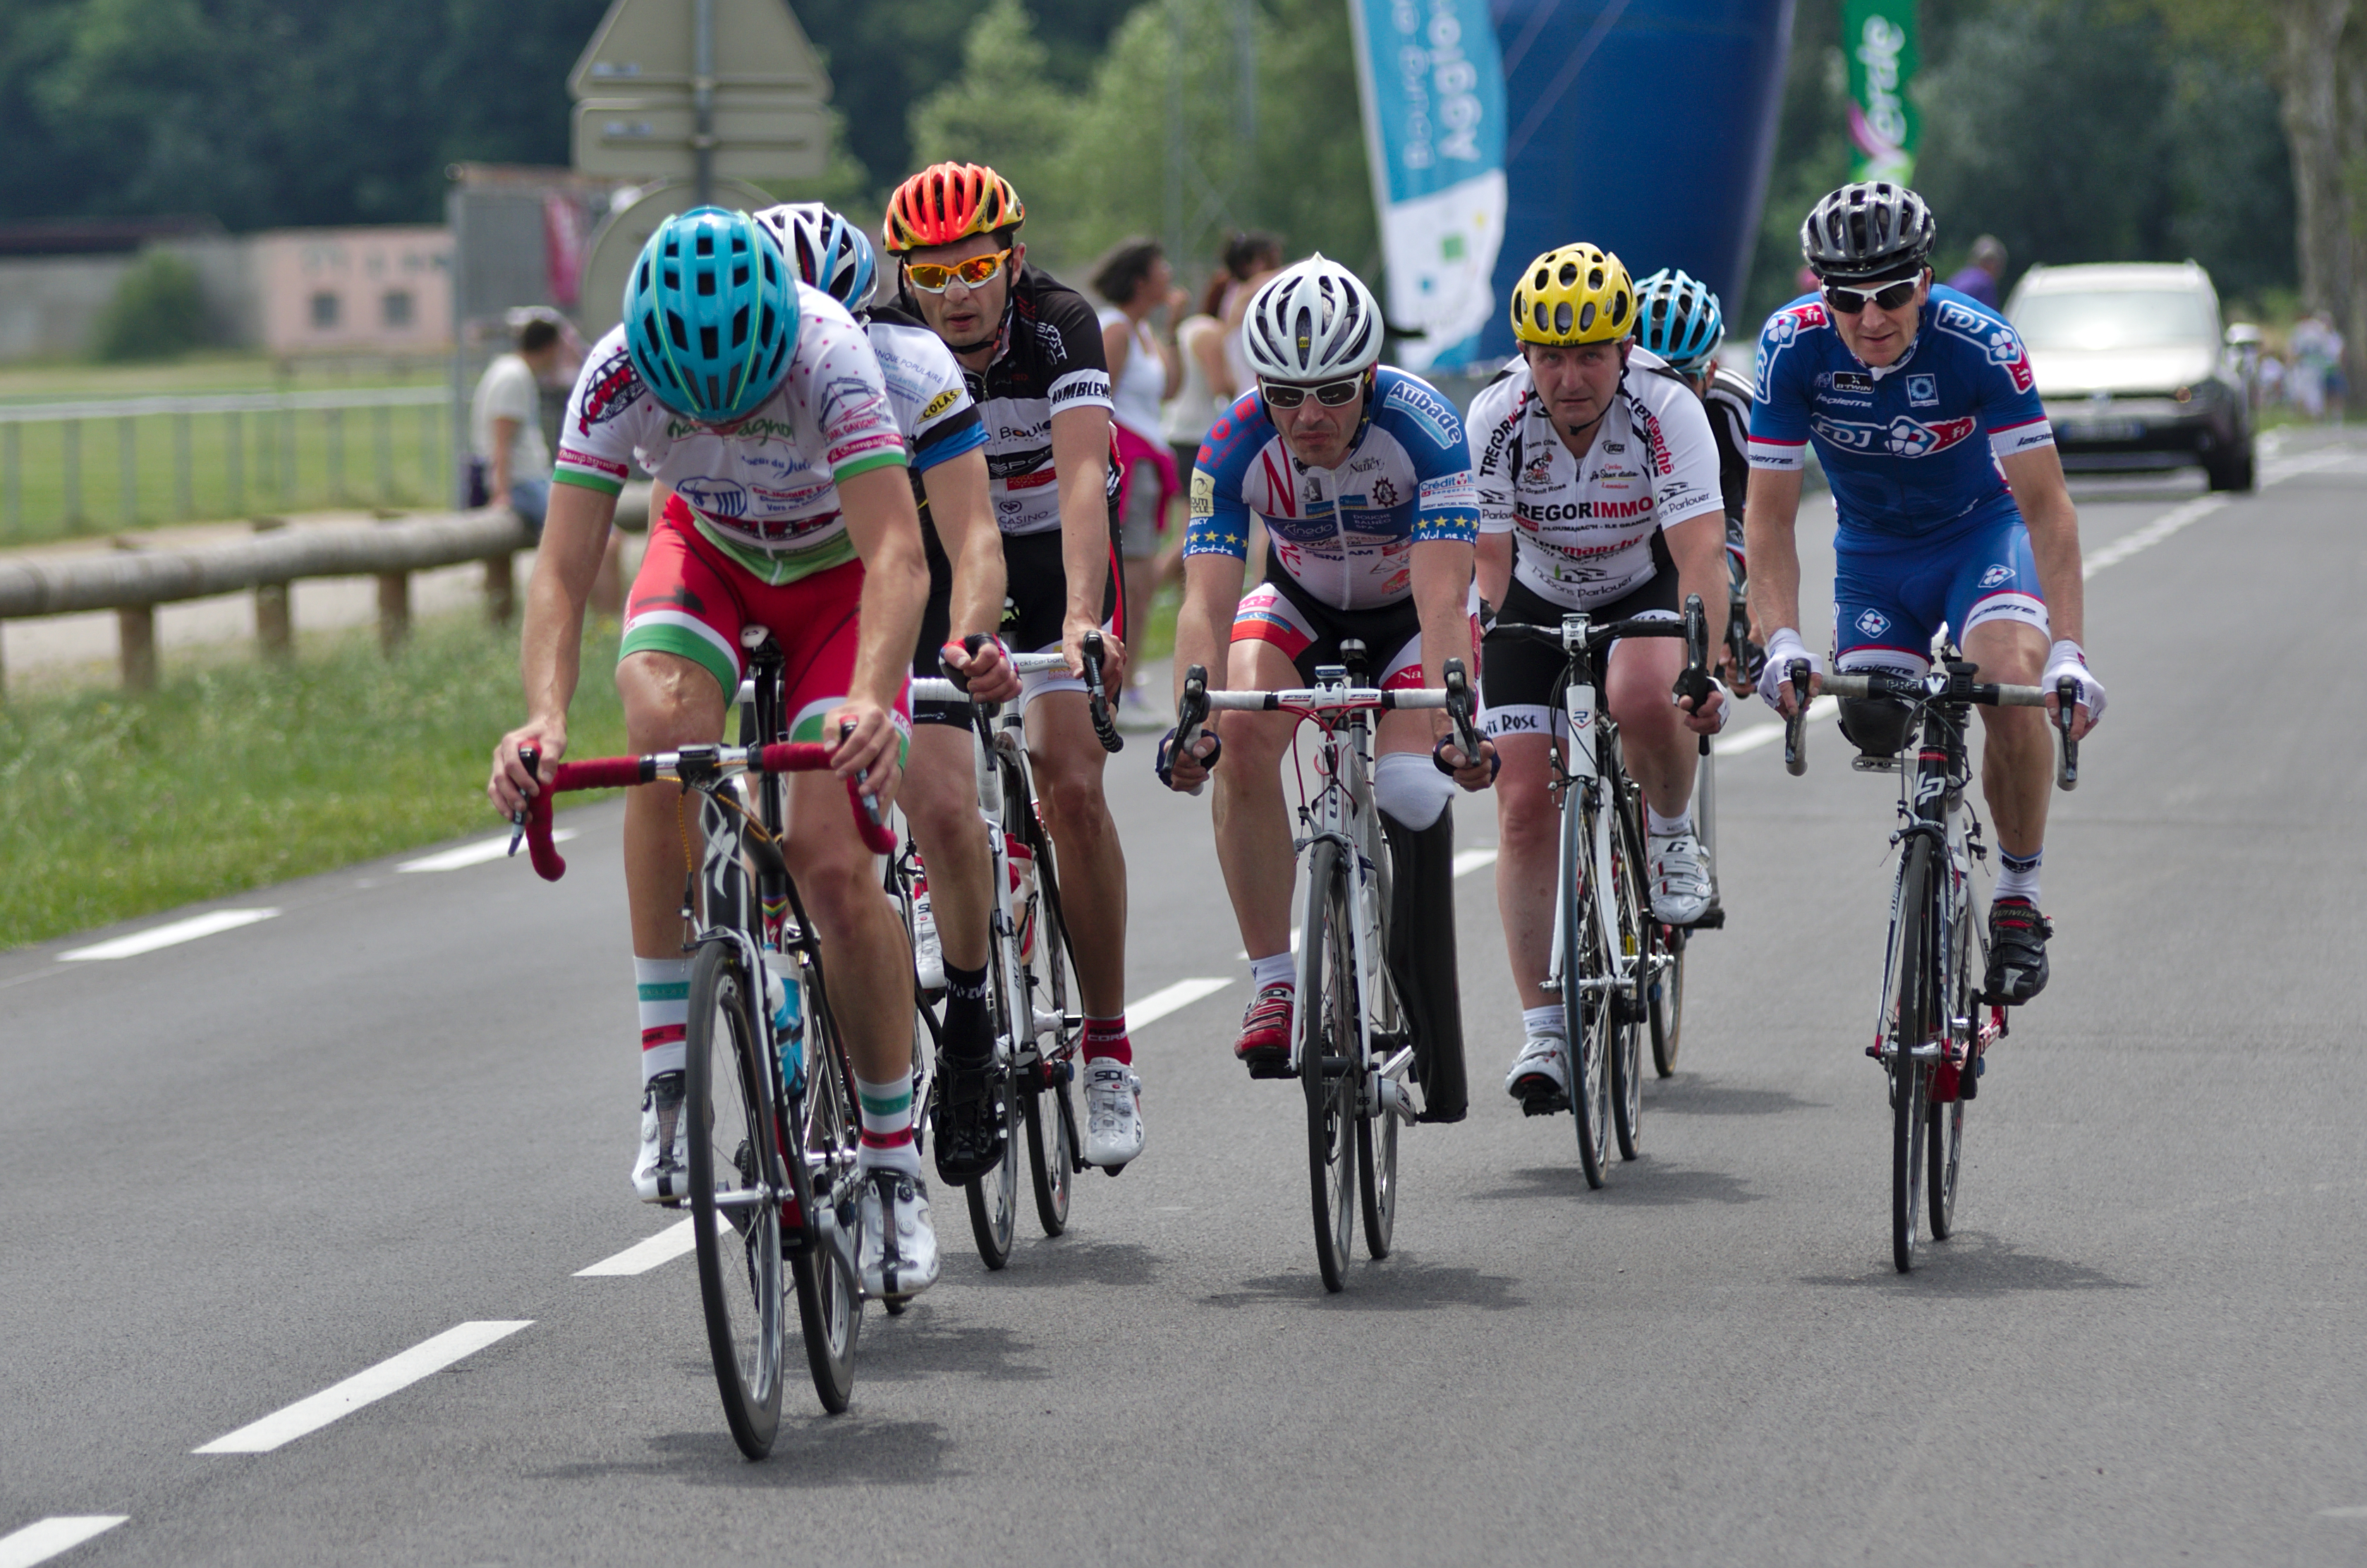 Championnat de France de cyclisme handisport - 20140614 - Course en ligne solo 20